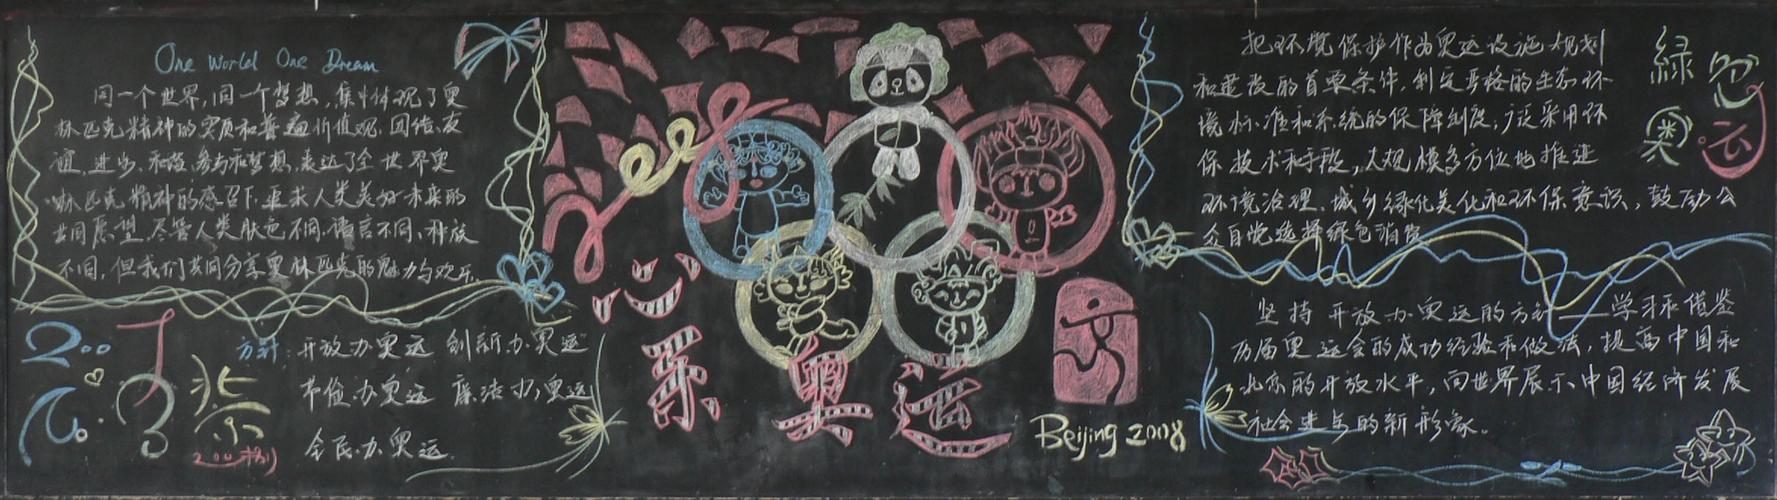 奥运精神黑板报图片